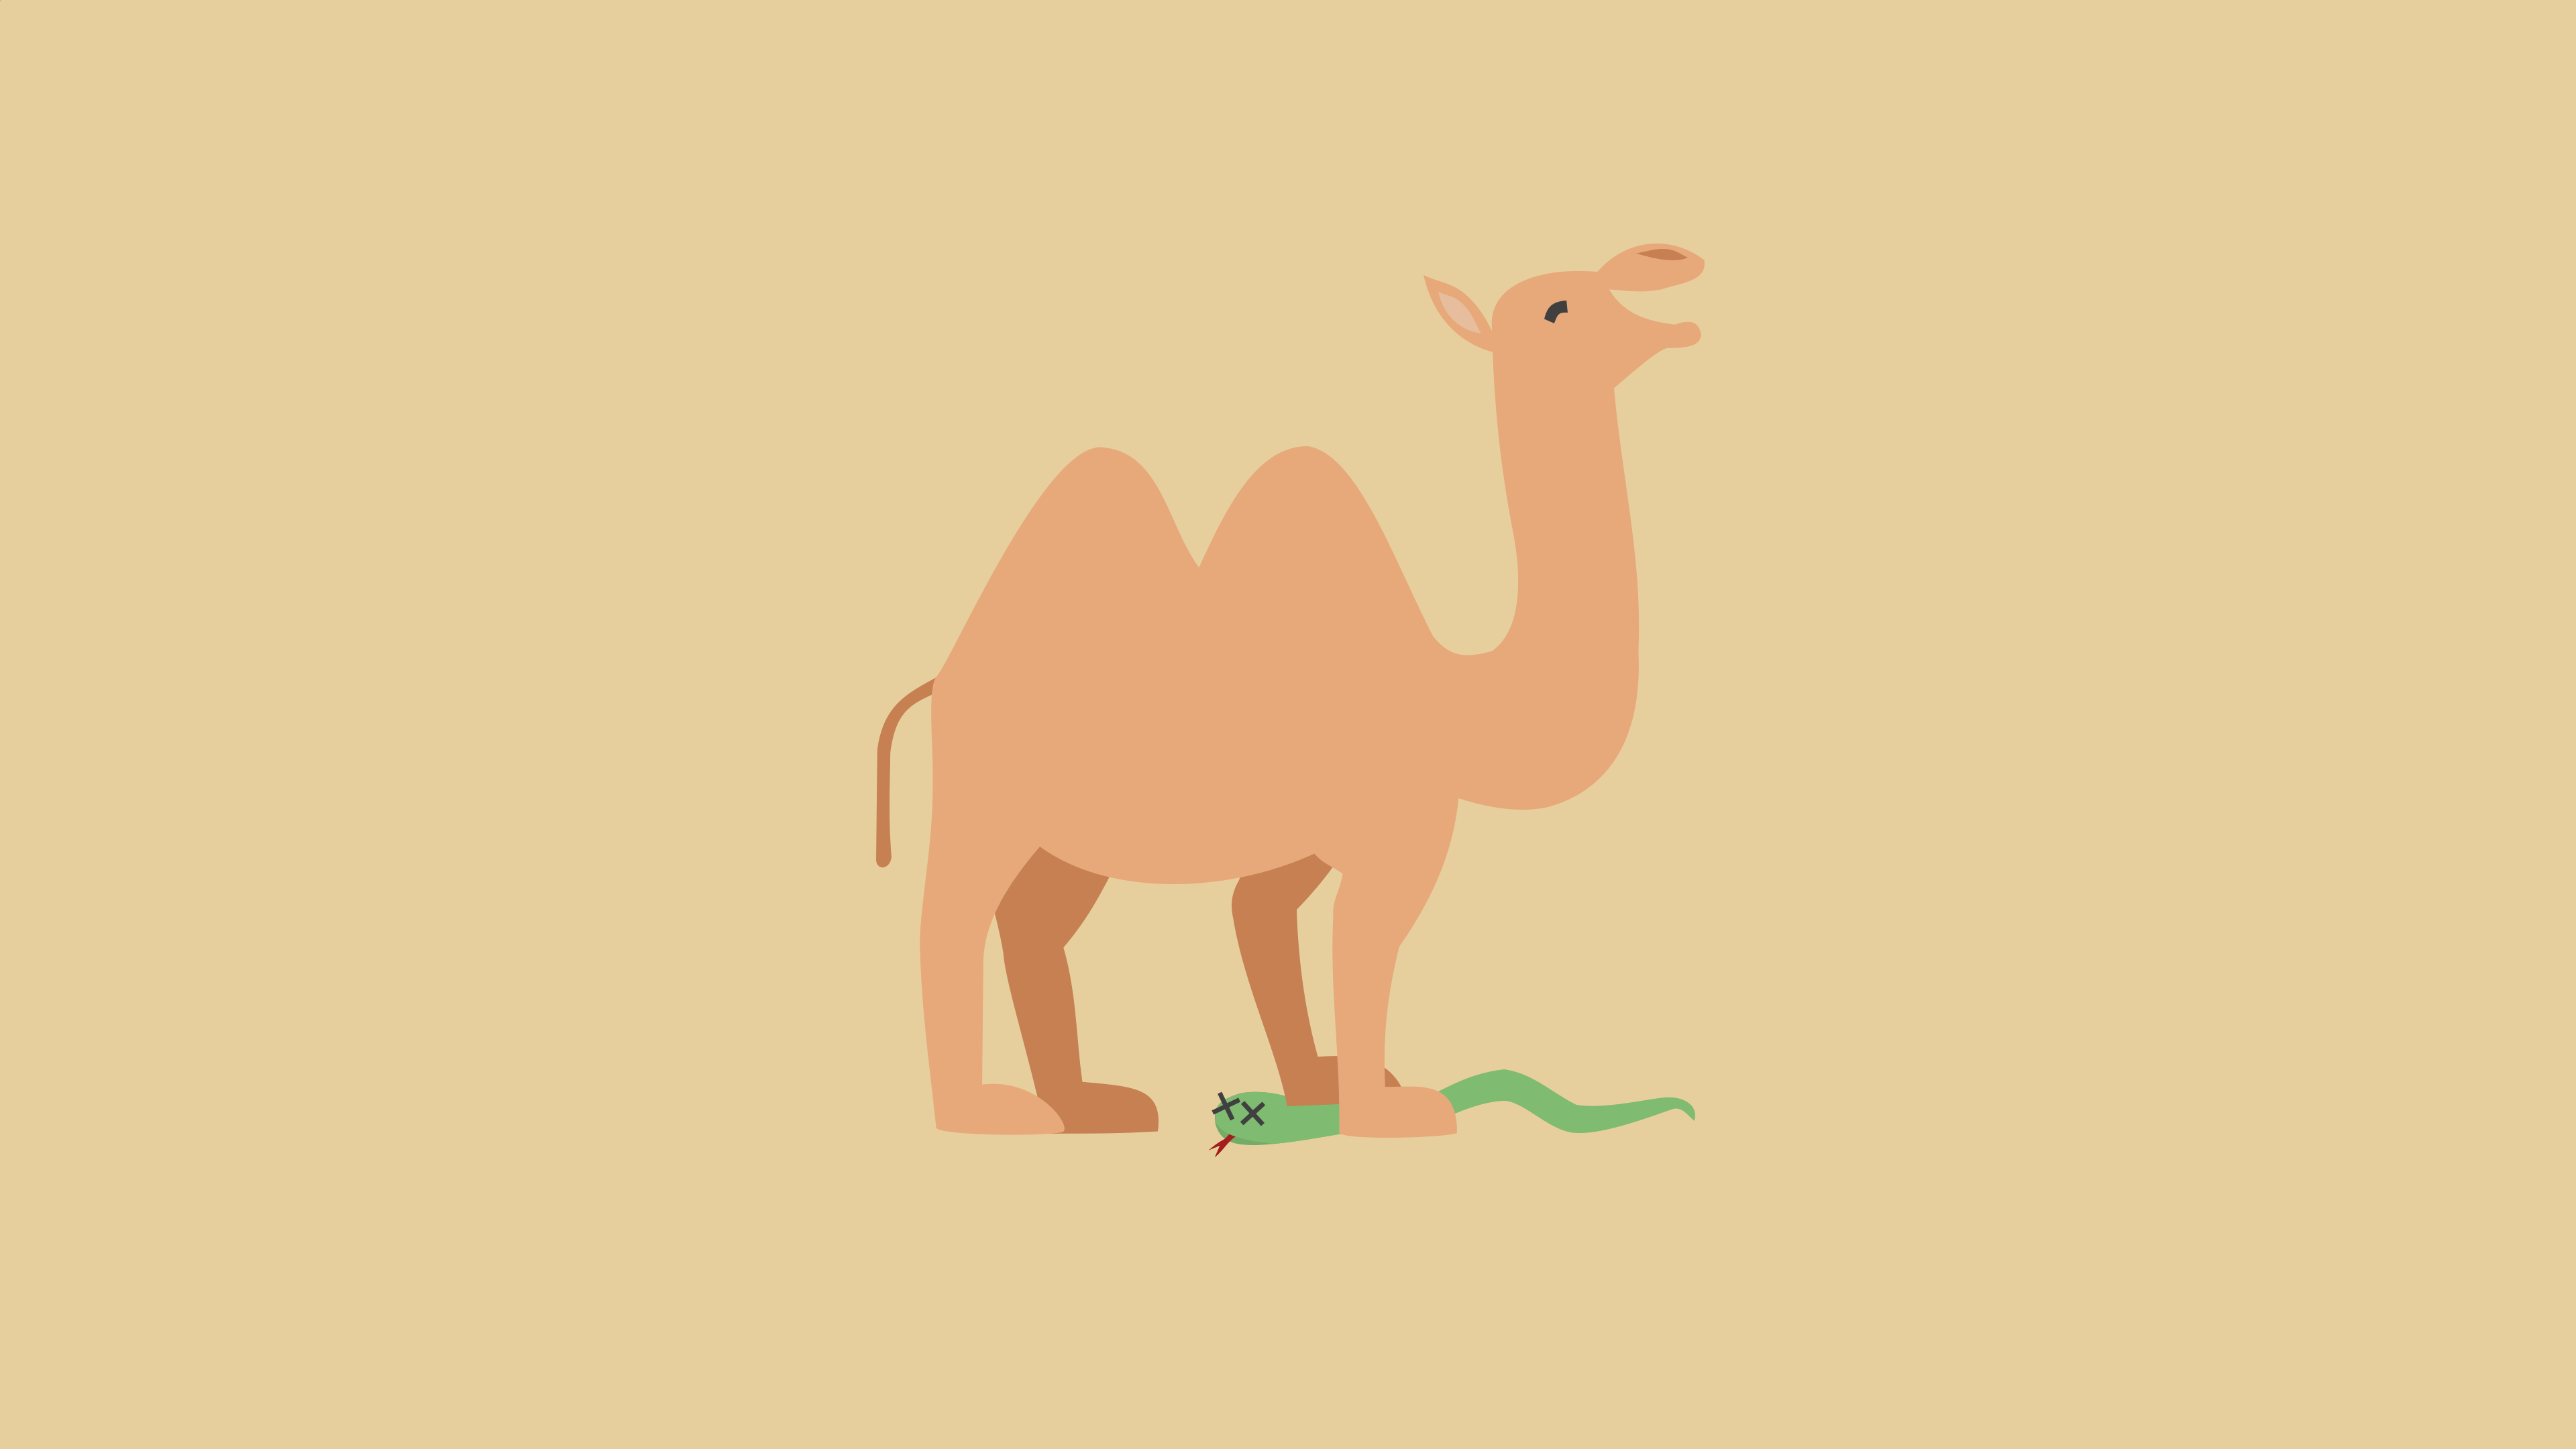 A camel steps on a snake